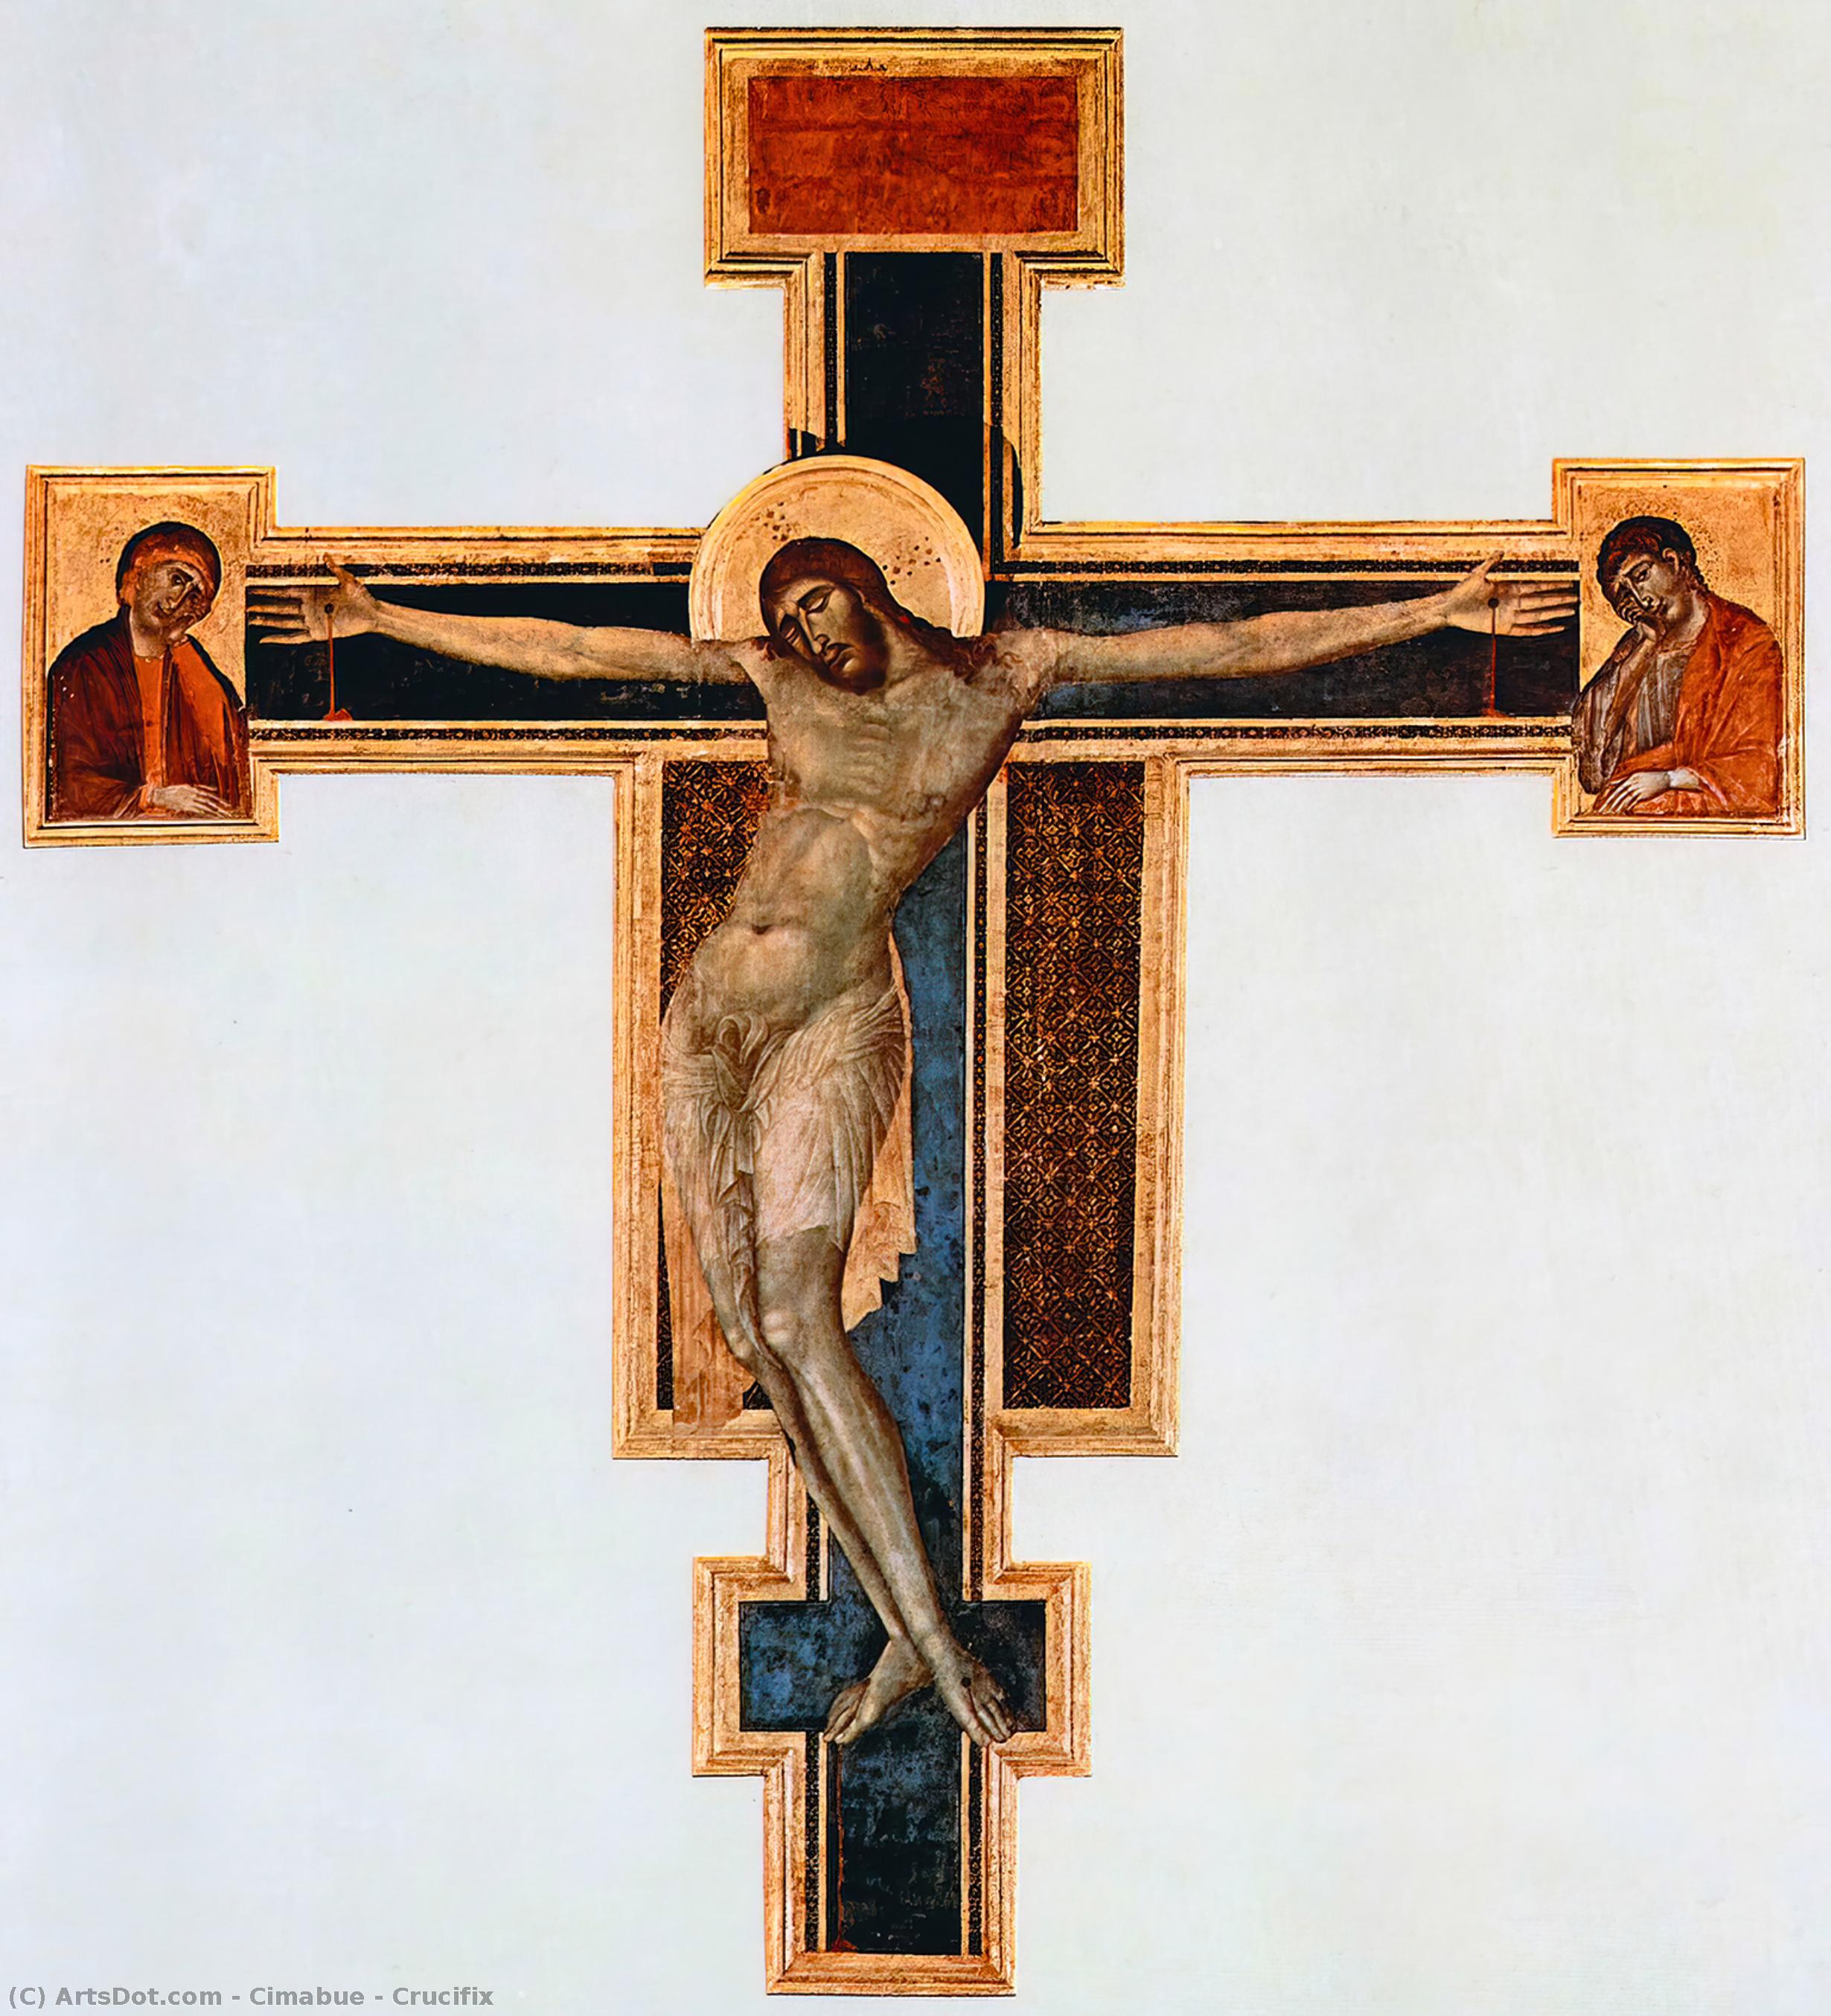 Acheter Reproductions D'art De Musée Crucifix, 1287 de Cimabue (1240-1302, Italy) | ArtsDot.com